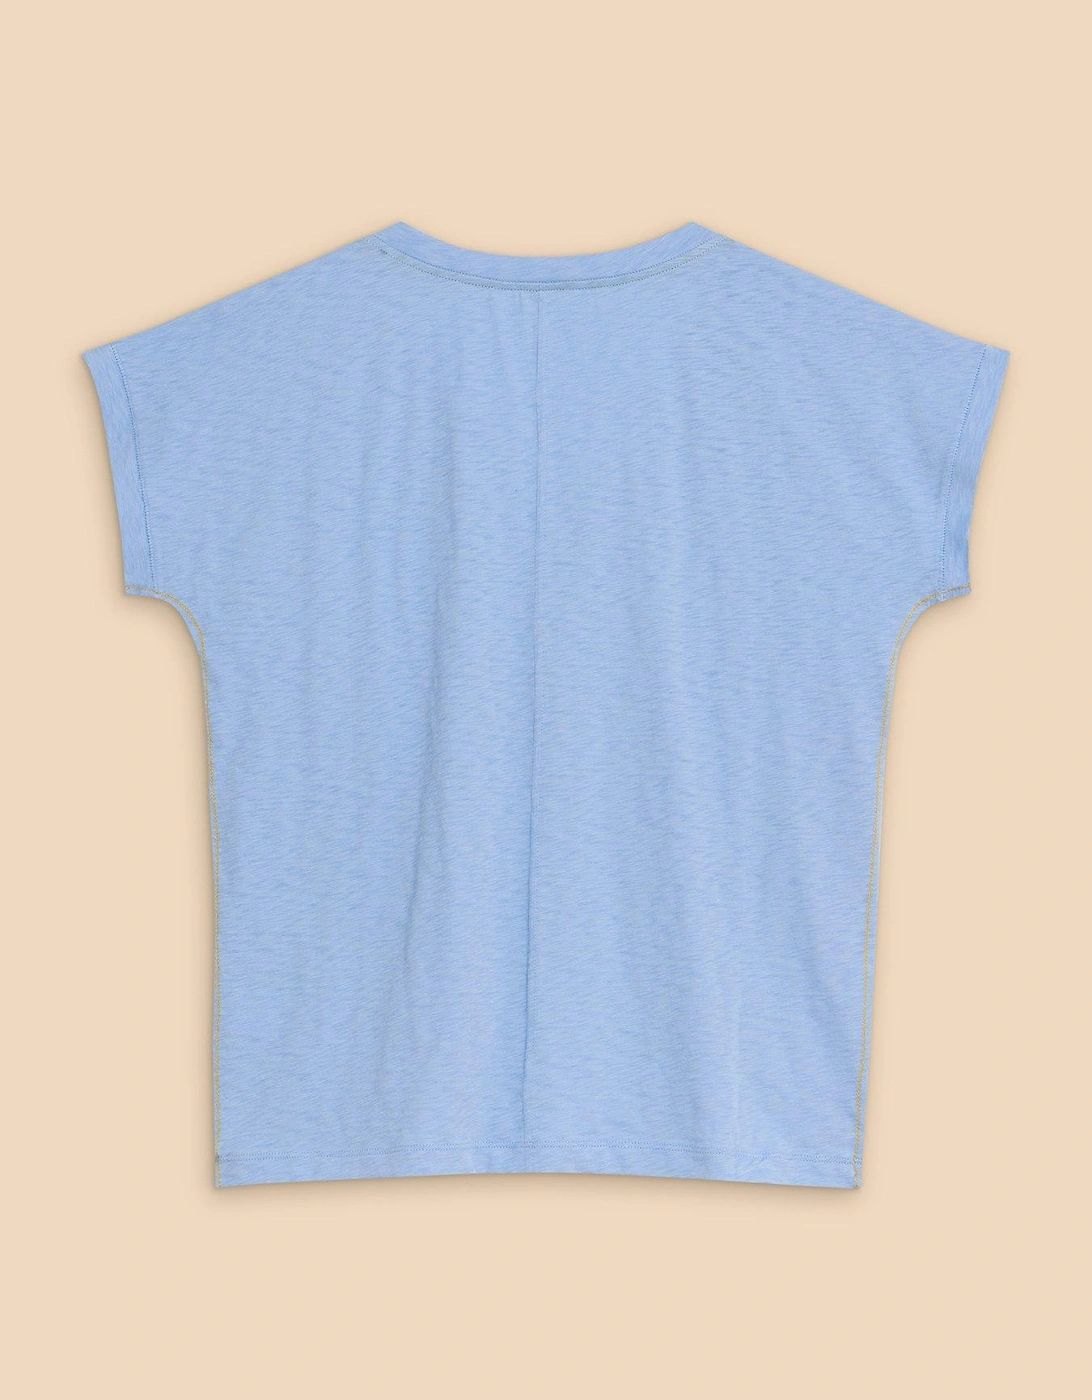 Nelly Notch Neck T-Shirt - Blue